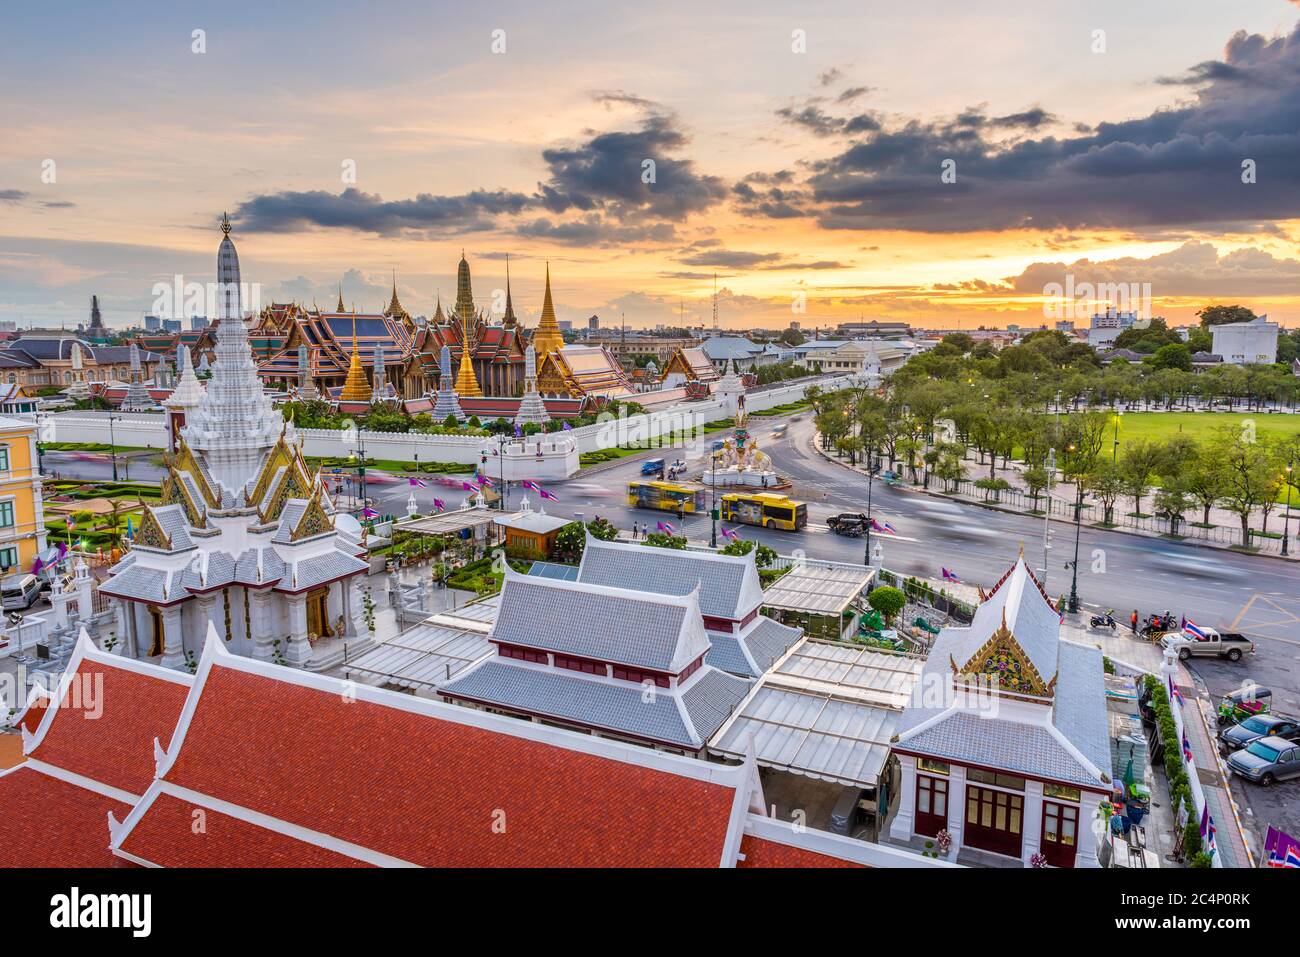 Bangkok, Thailand at the Temple of the Emerald Buddha and Grand Palace at dusk. Stock Photo